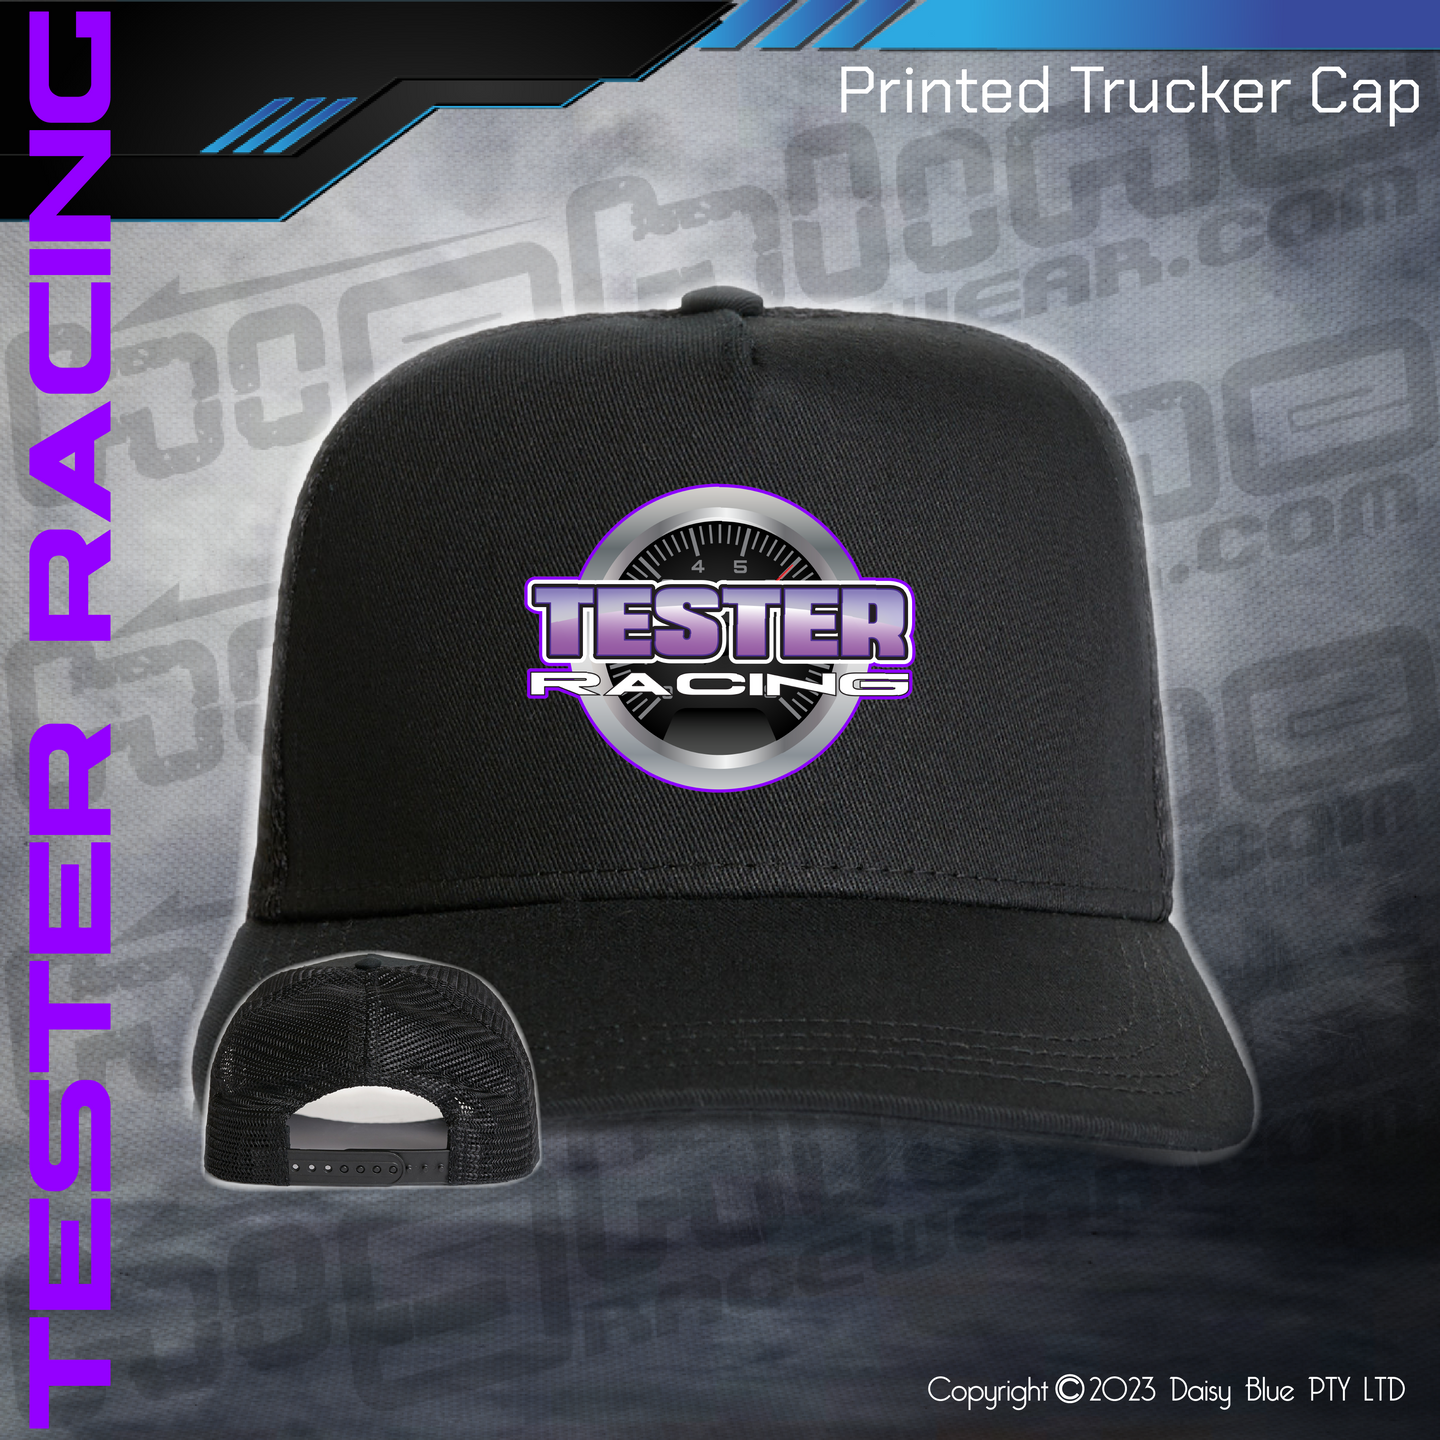 Printed Trucker Cap - Tester Racing